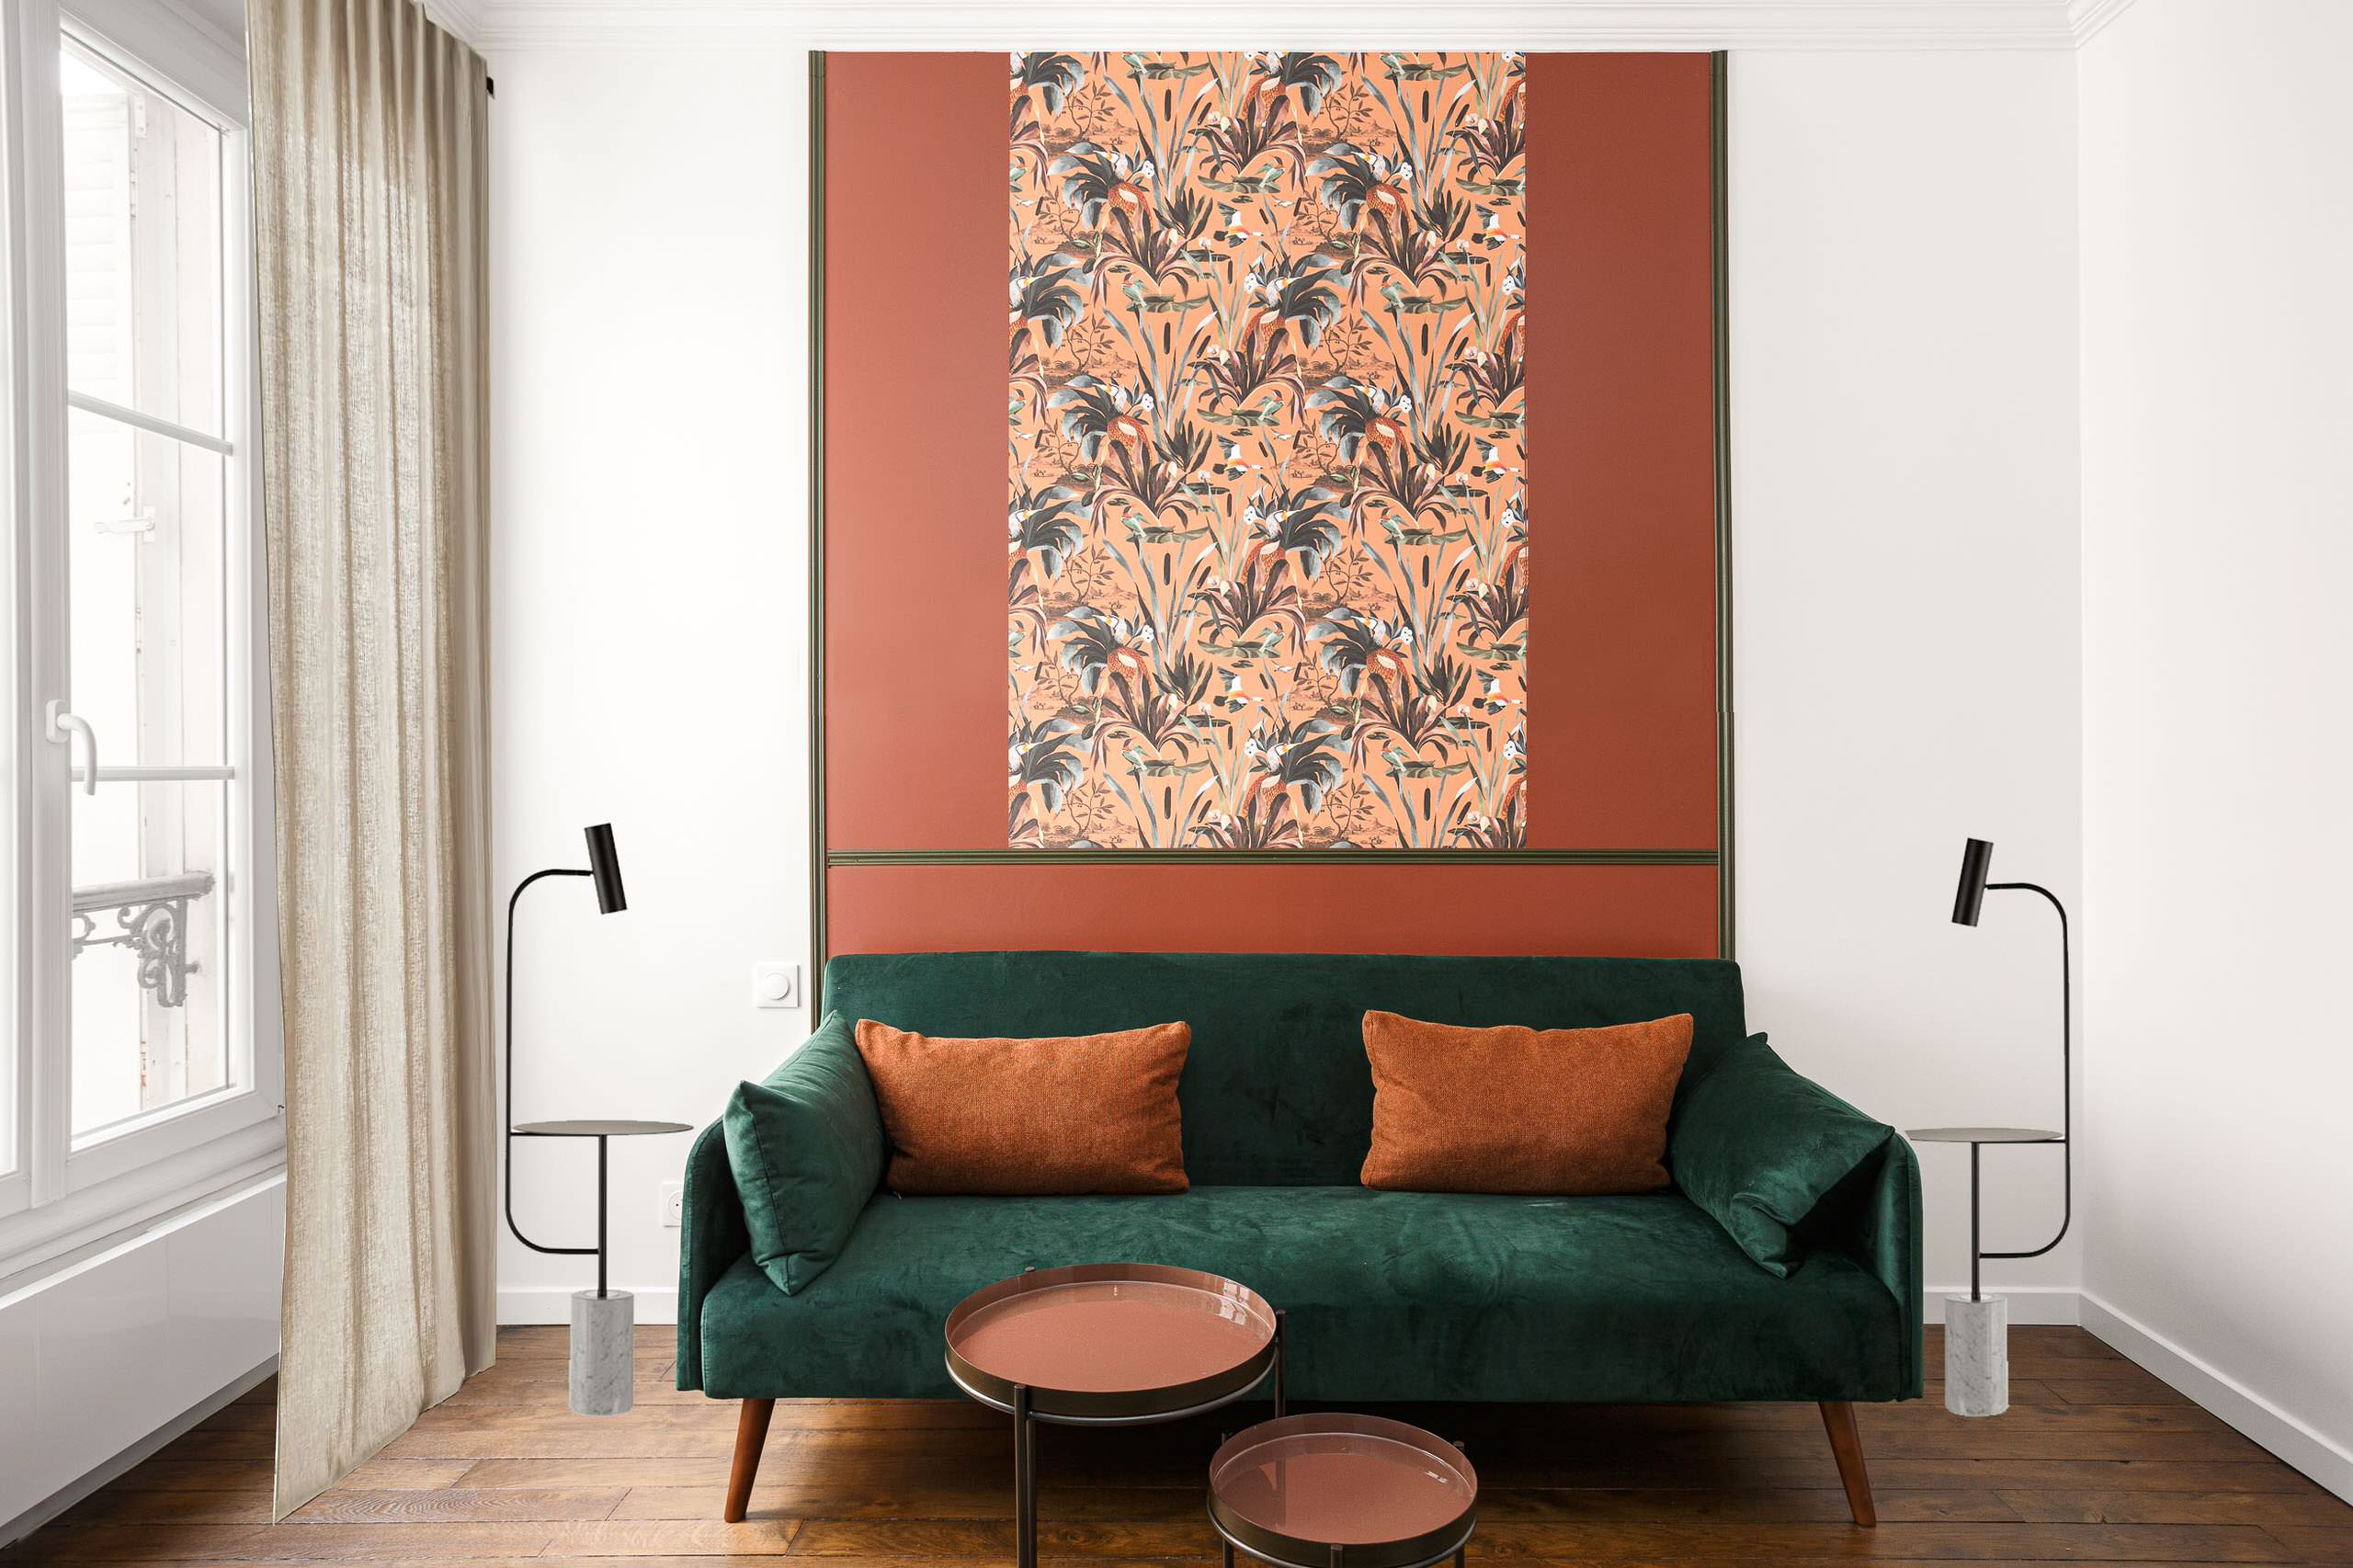 おしゃれな寝室 オレンジの壁 のインテリア画像 75選 22年9月 Houzz ハウズ